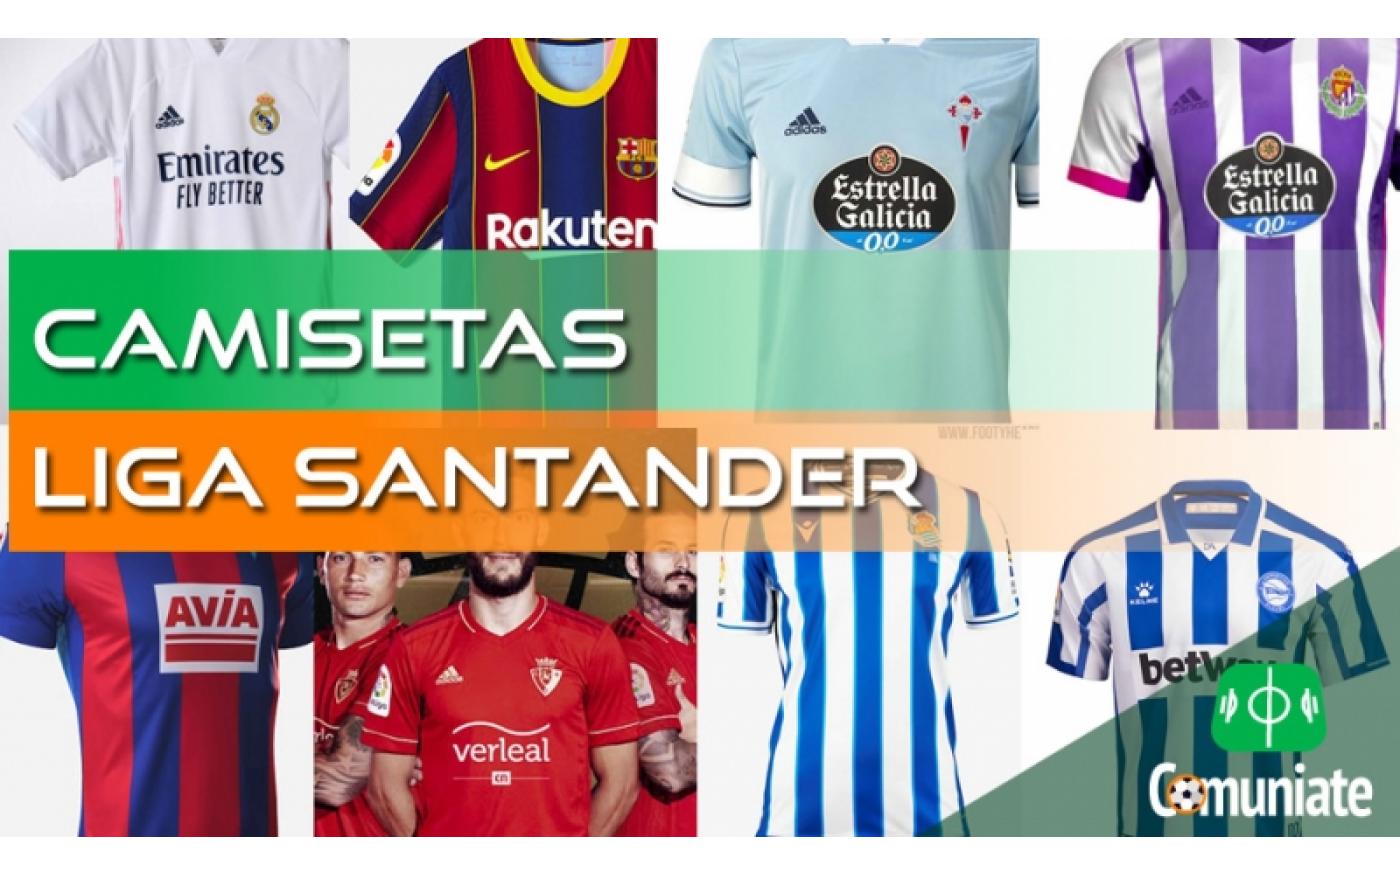 seguro mosquito Incentivo Camisetas de fútbol de la Liga Santander 2020/2021